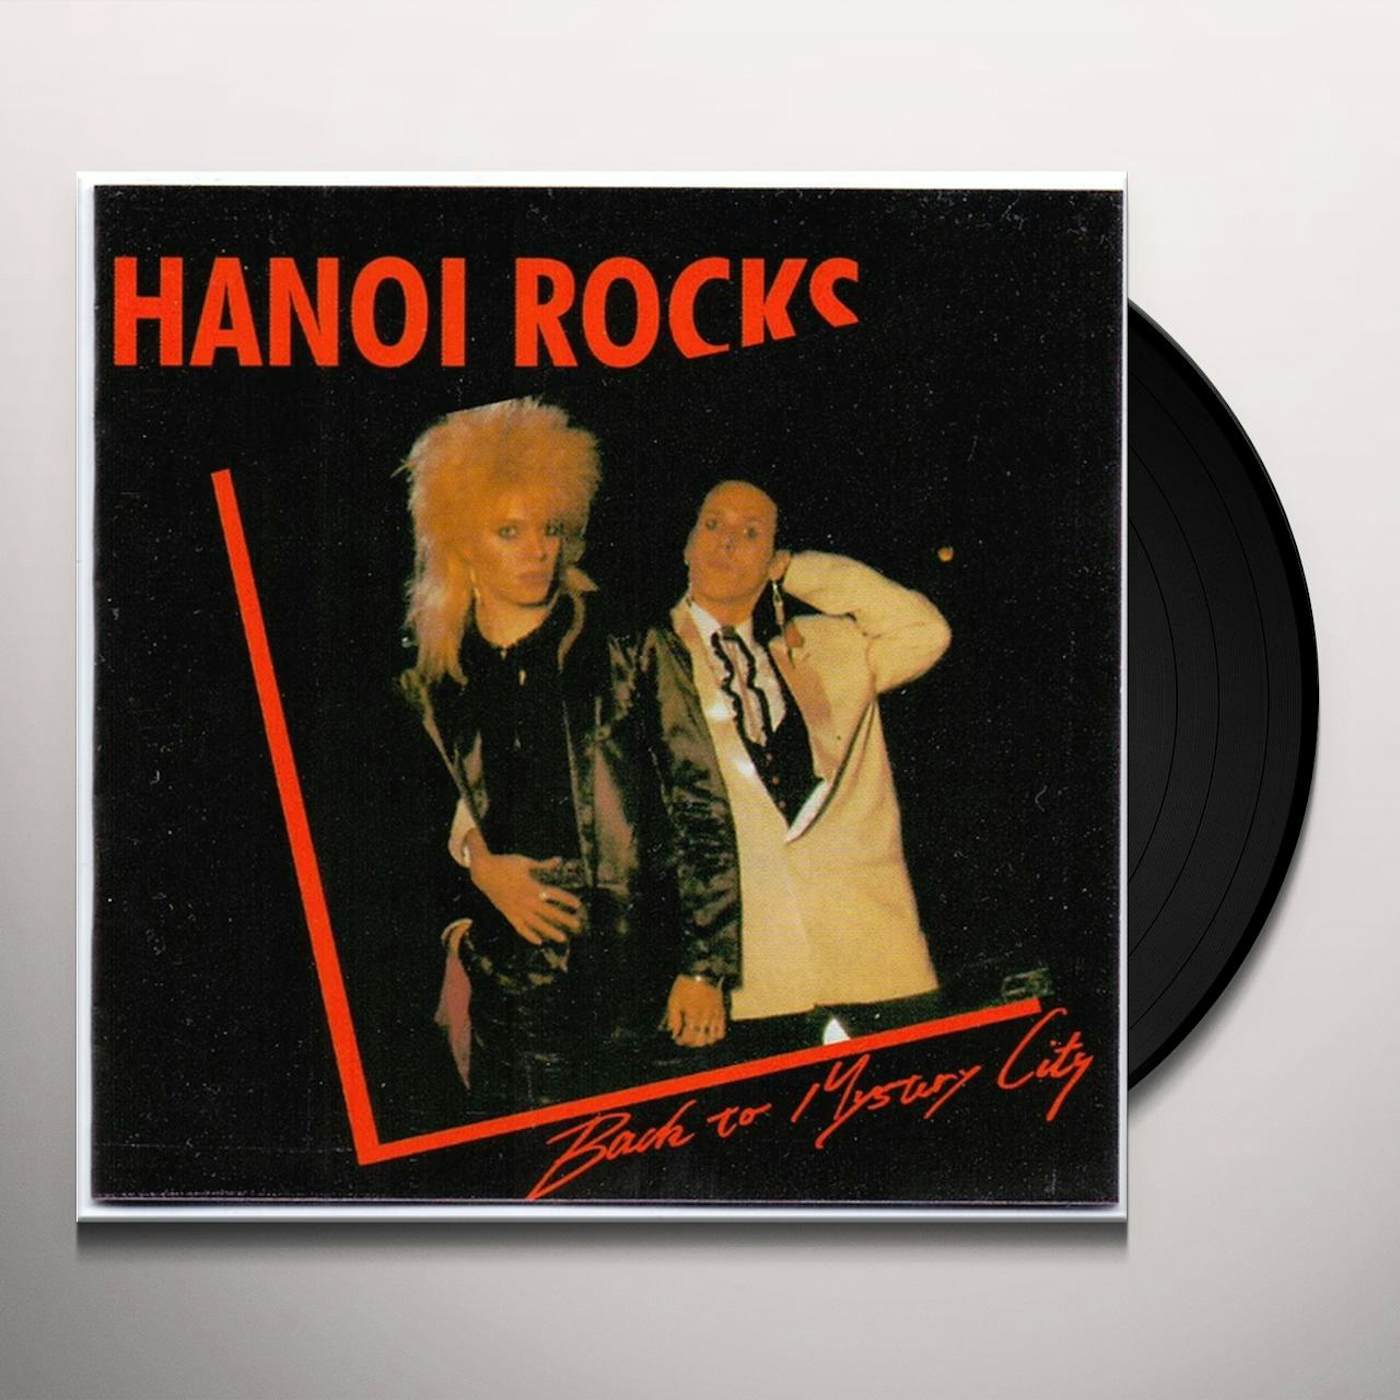 Hanoi Rocks Back To Mystery City Vinyl Record